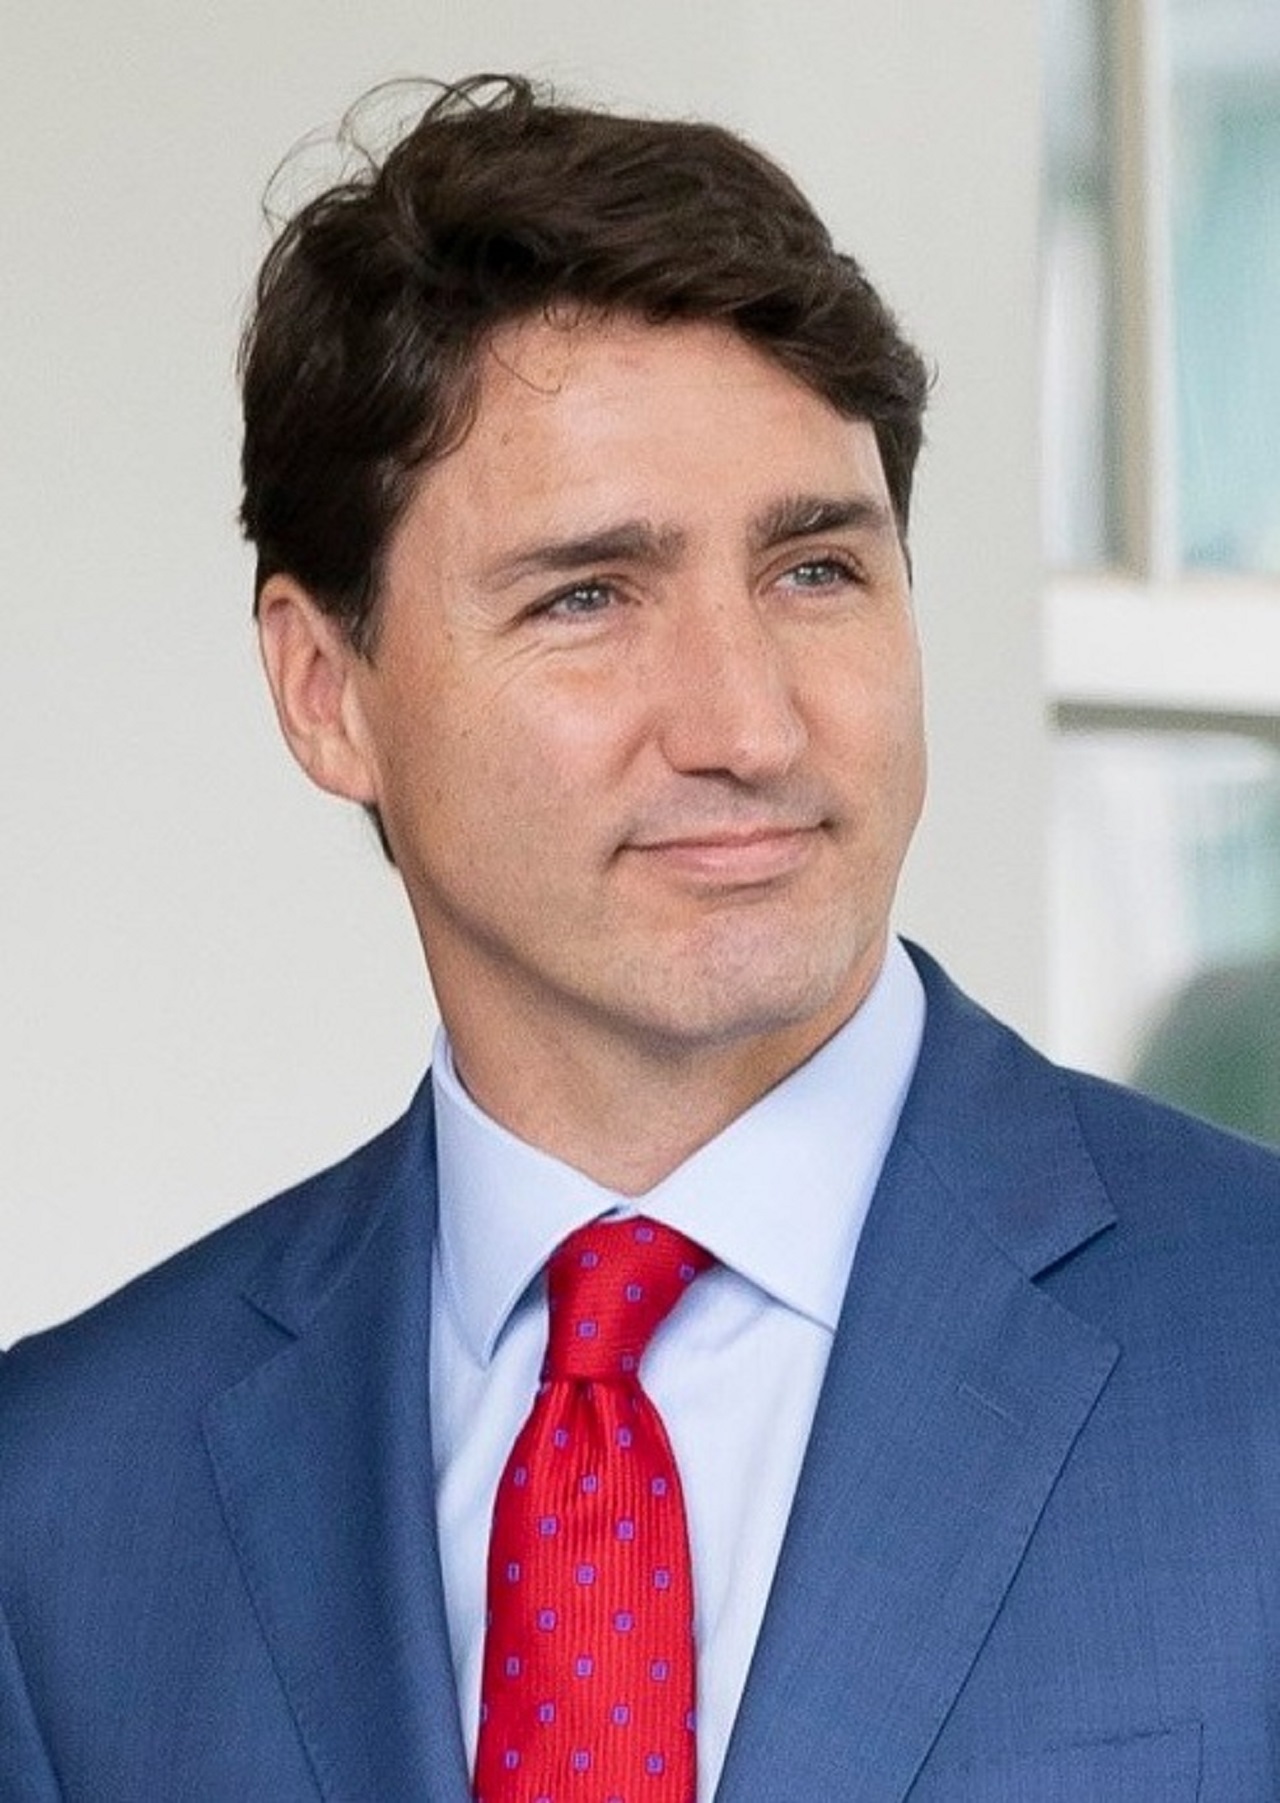 Trudeau vince le elezioni in Canada